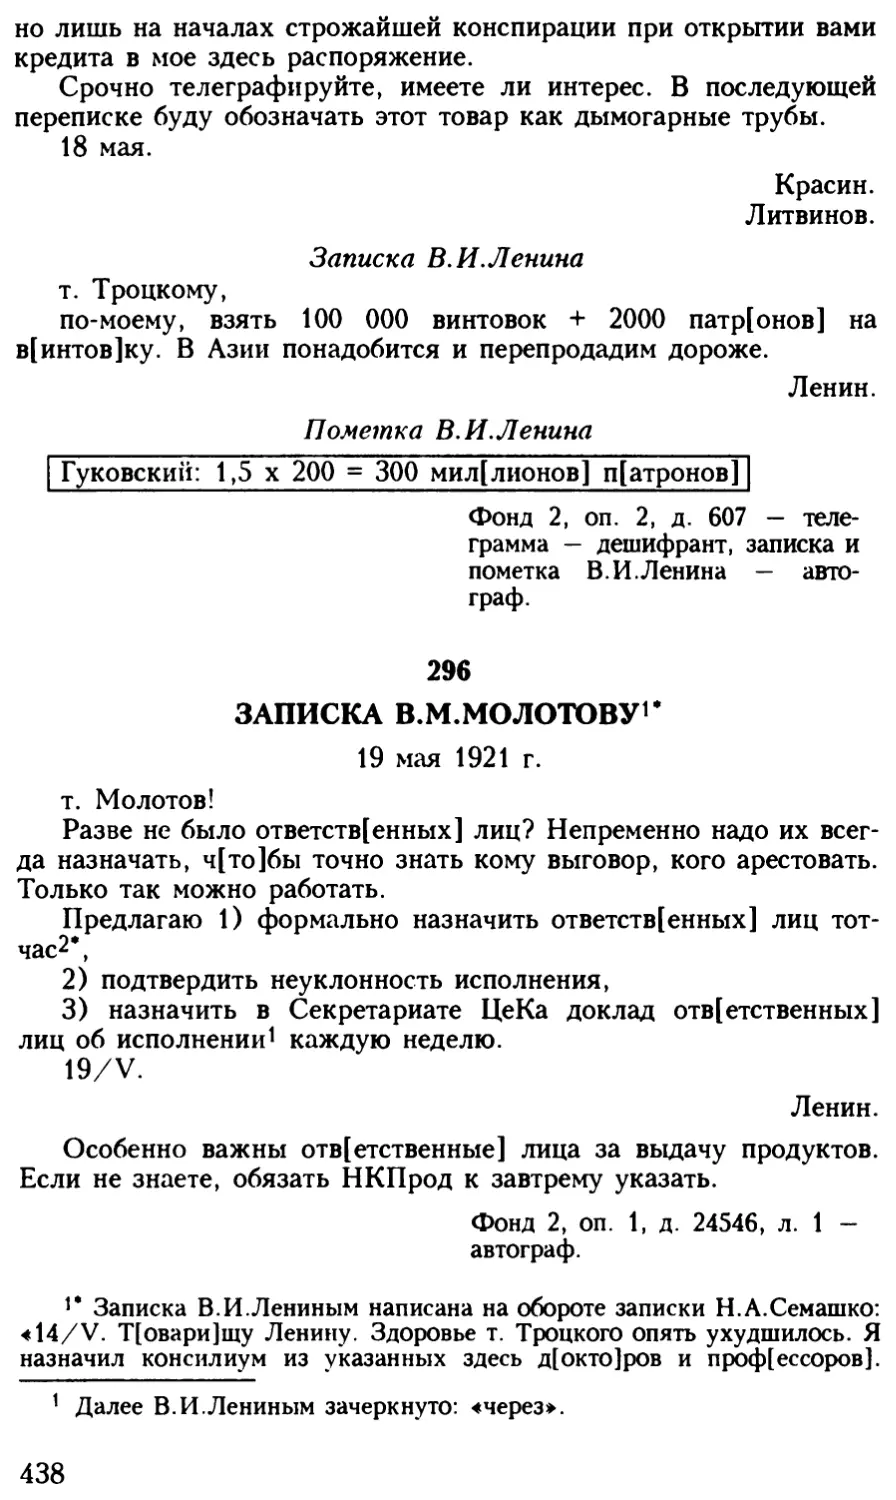 296. Записка В.М.Молотову. 19 мая 1921 г